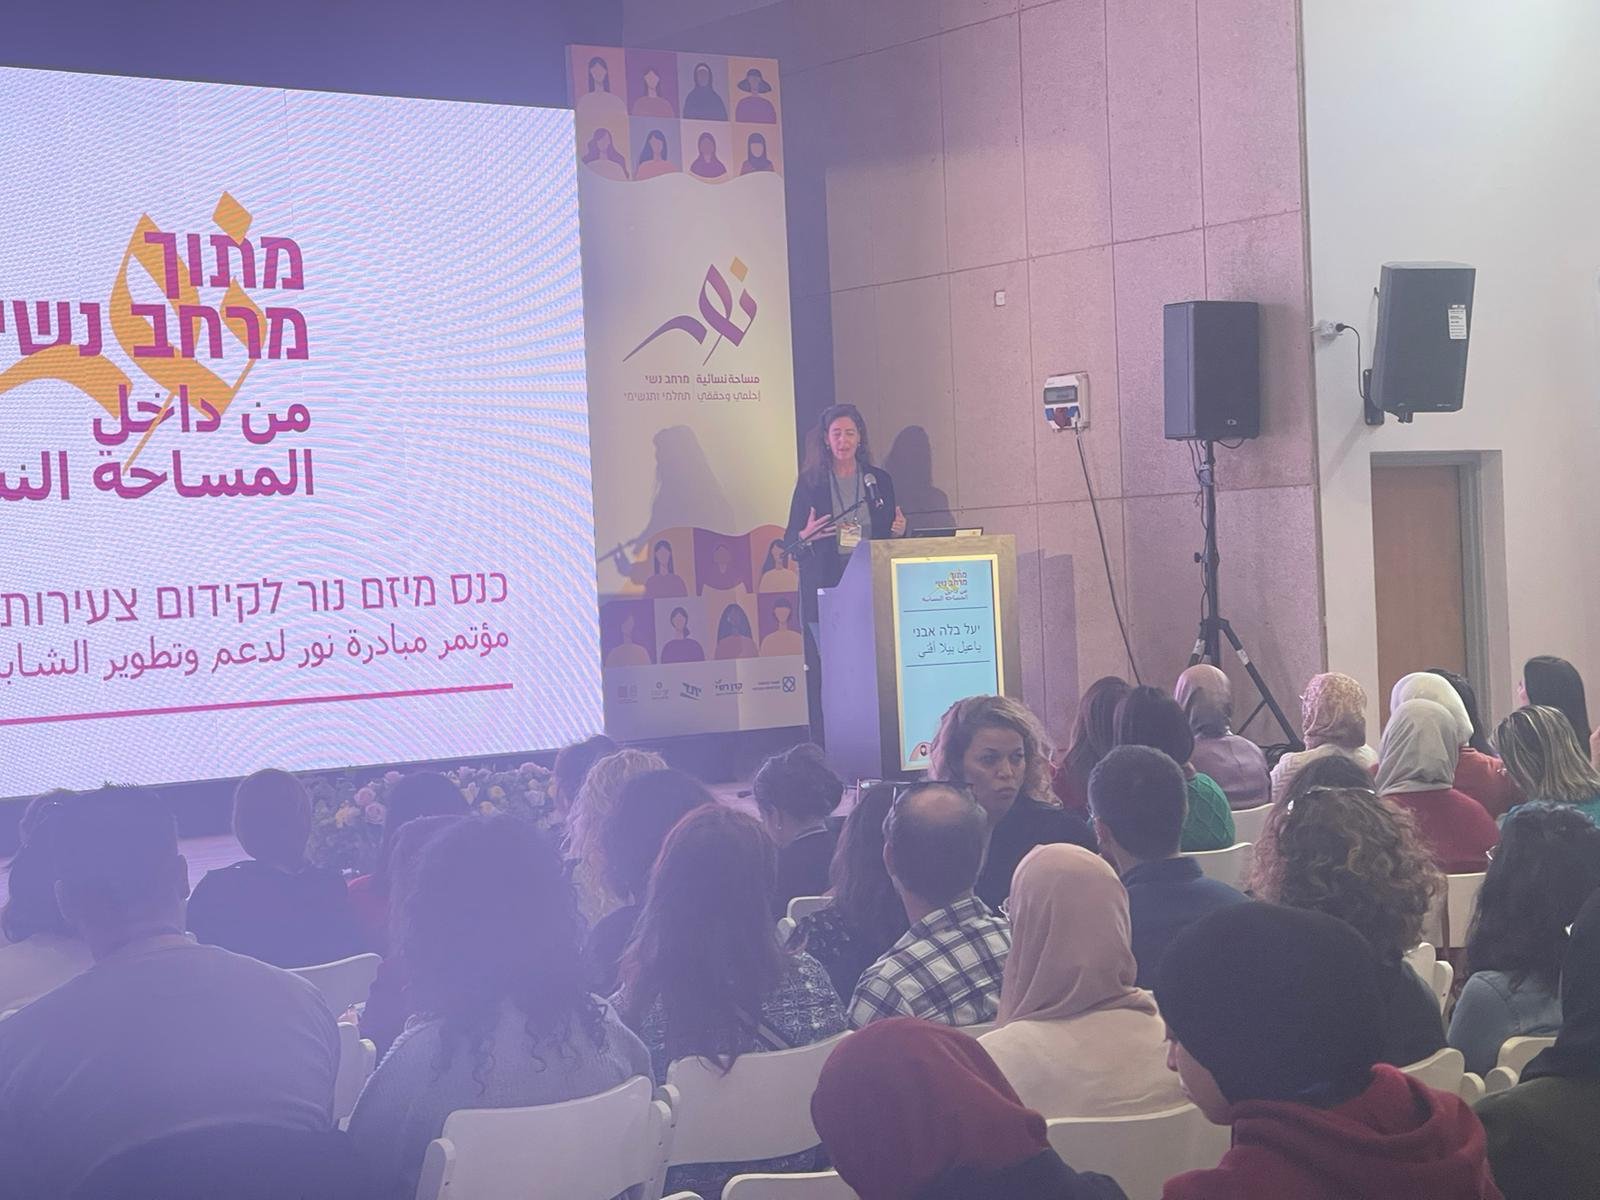 مشاركة واسعة في مؤتمر "مبادرة نور" في كفر قرع .."الشابات العربيات من الازمة الى النمو"-18